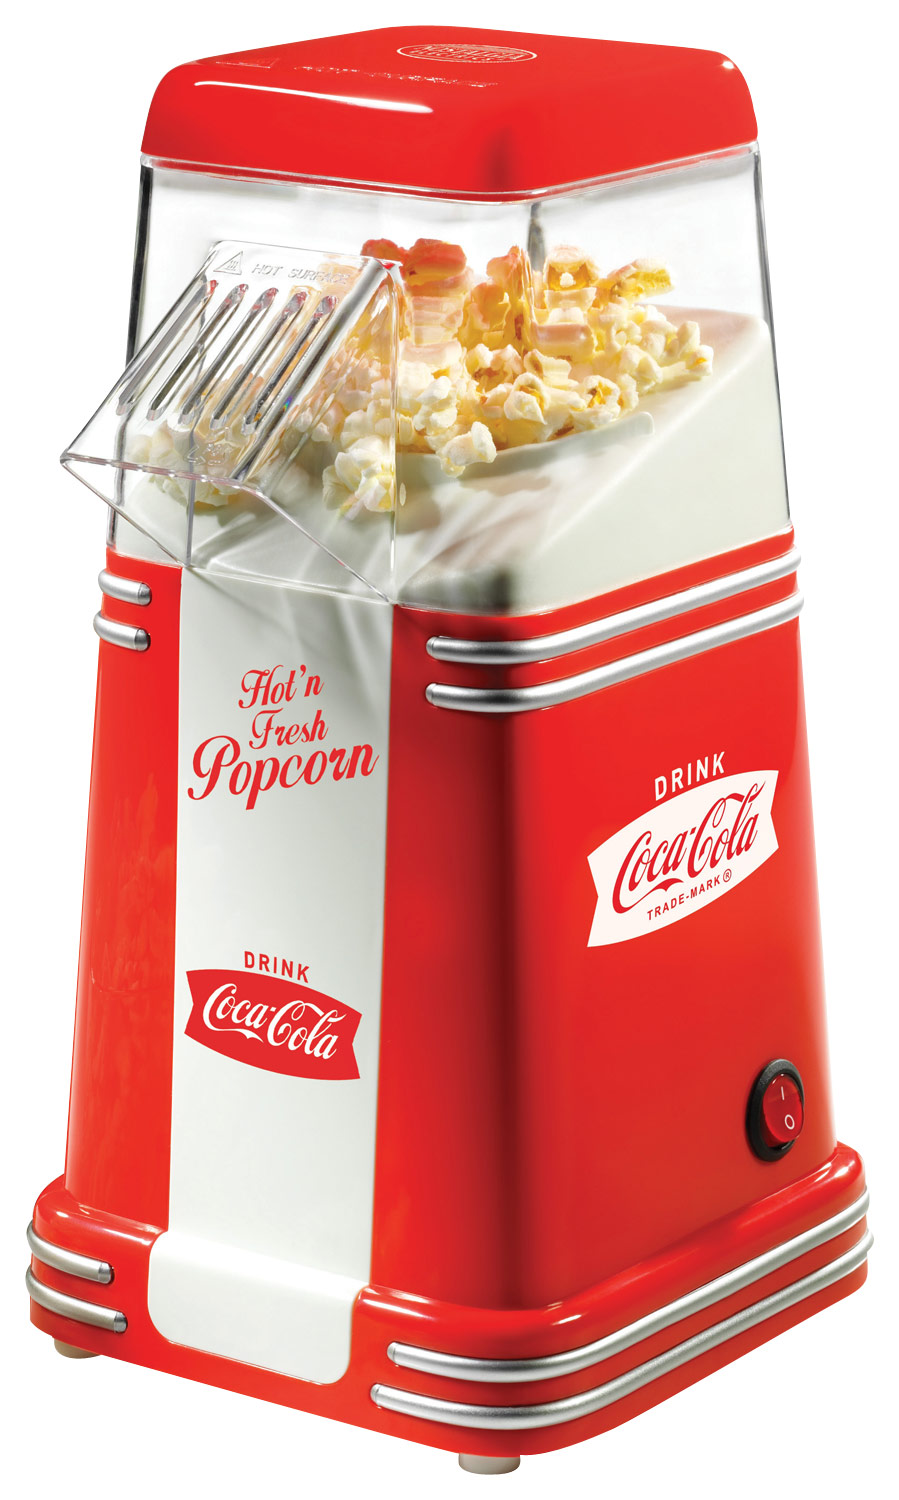 hot air popcorn popper